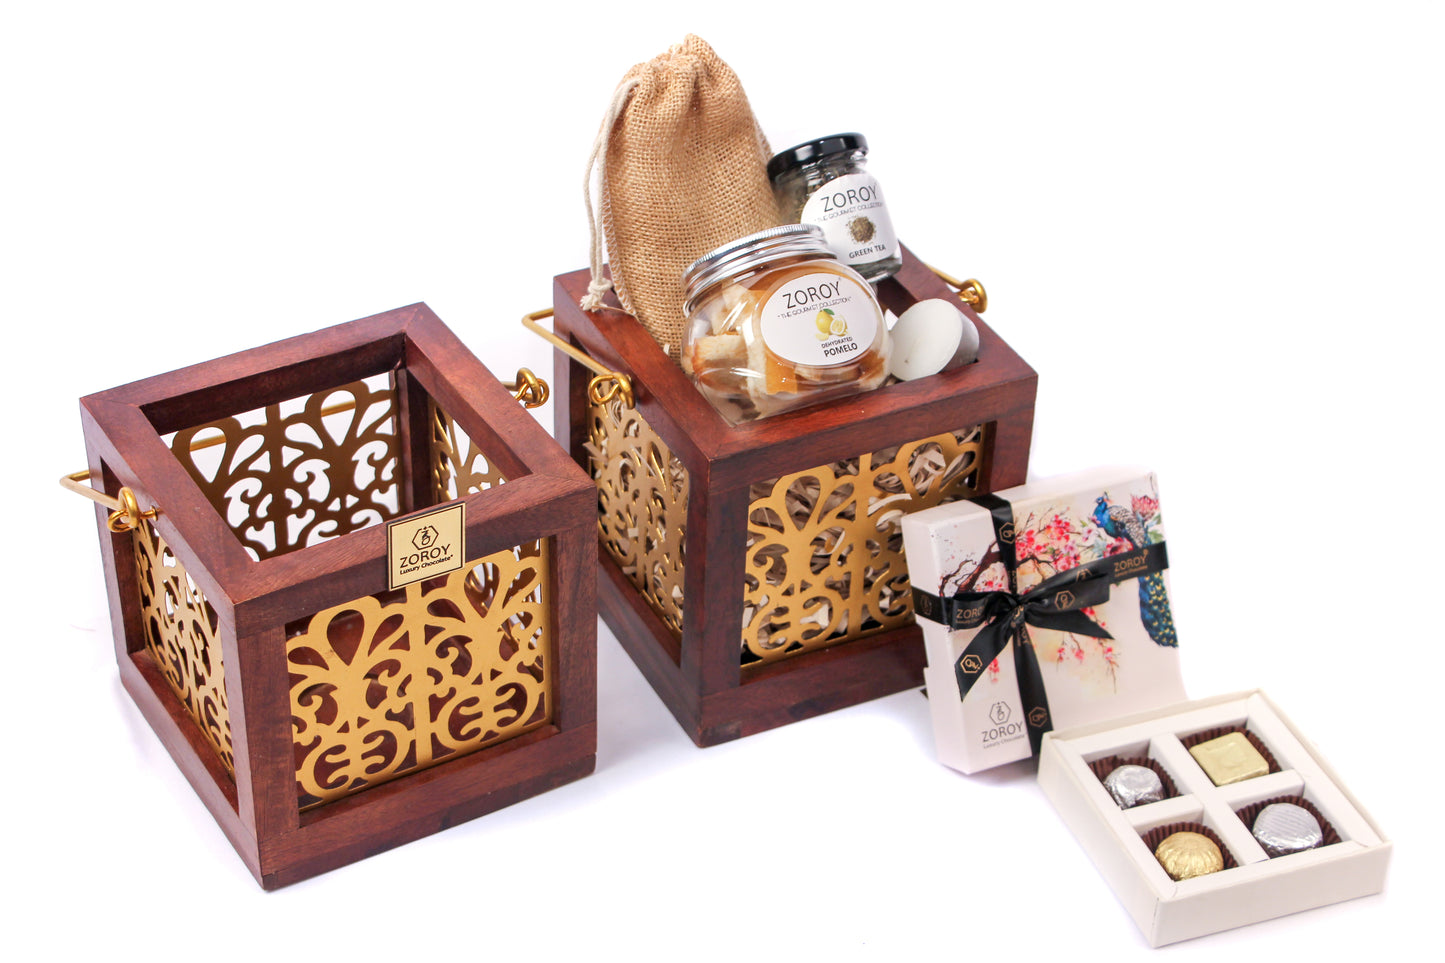 Diwali Wooden Lantern hamper with assorted goodies